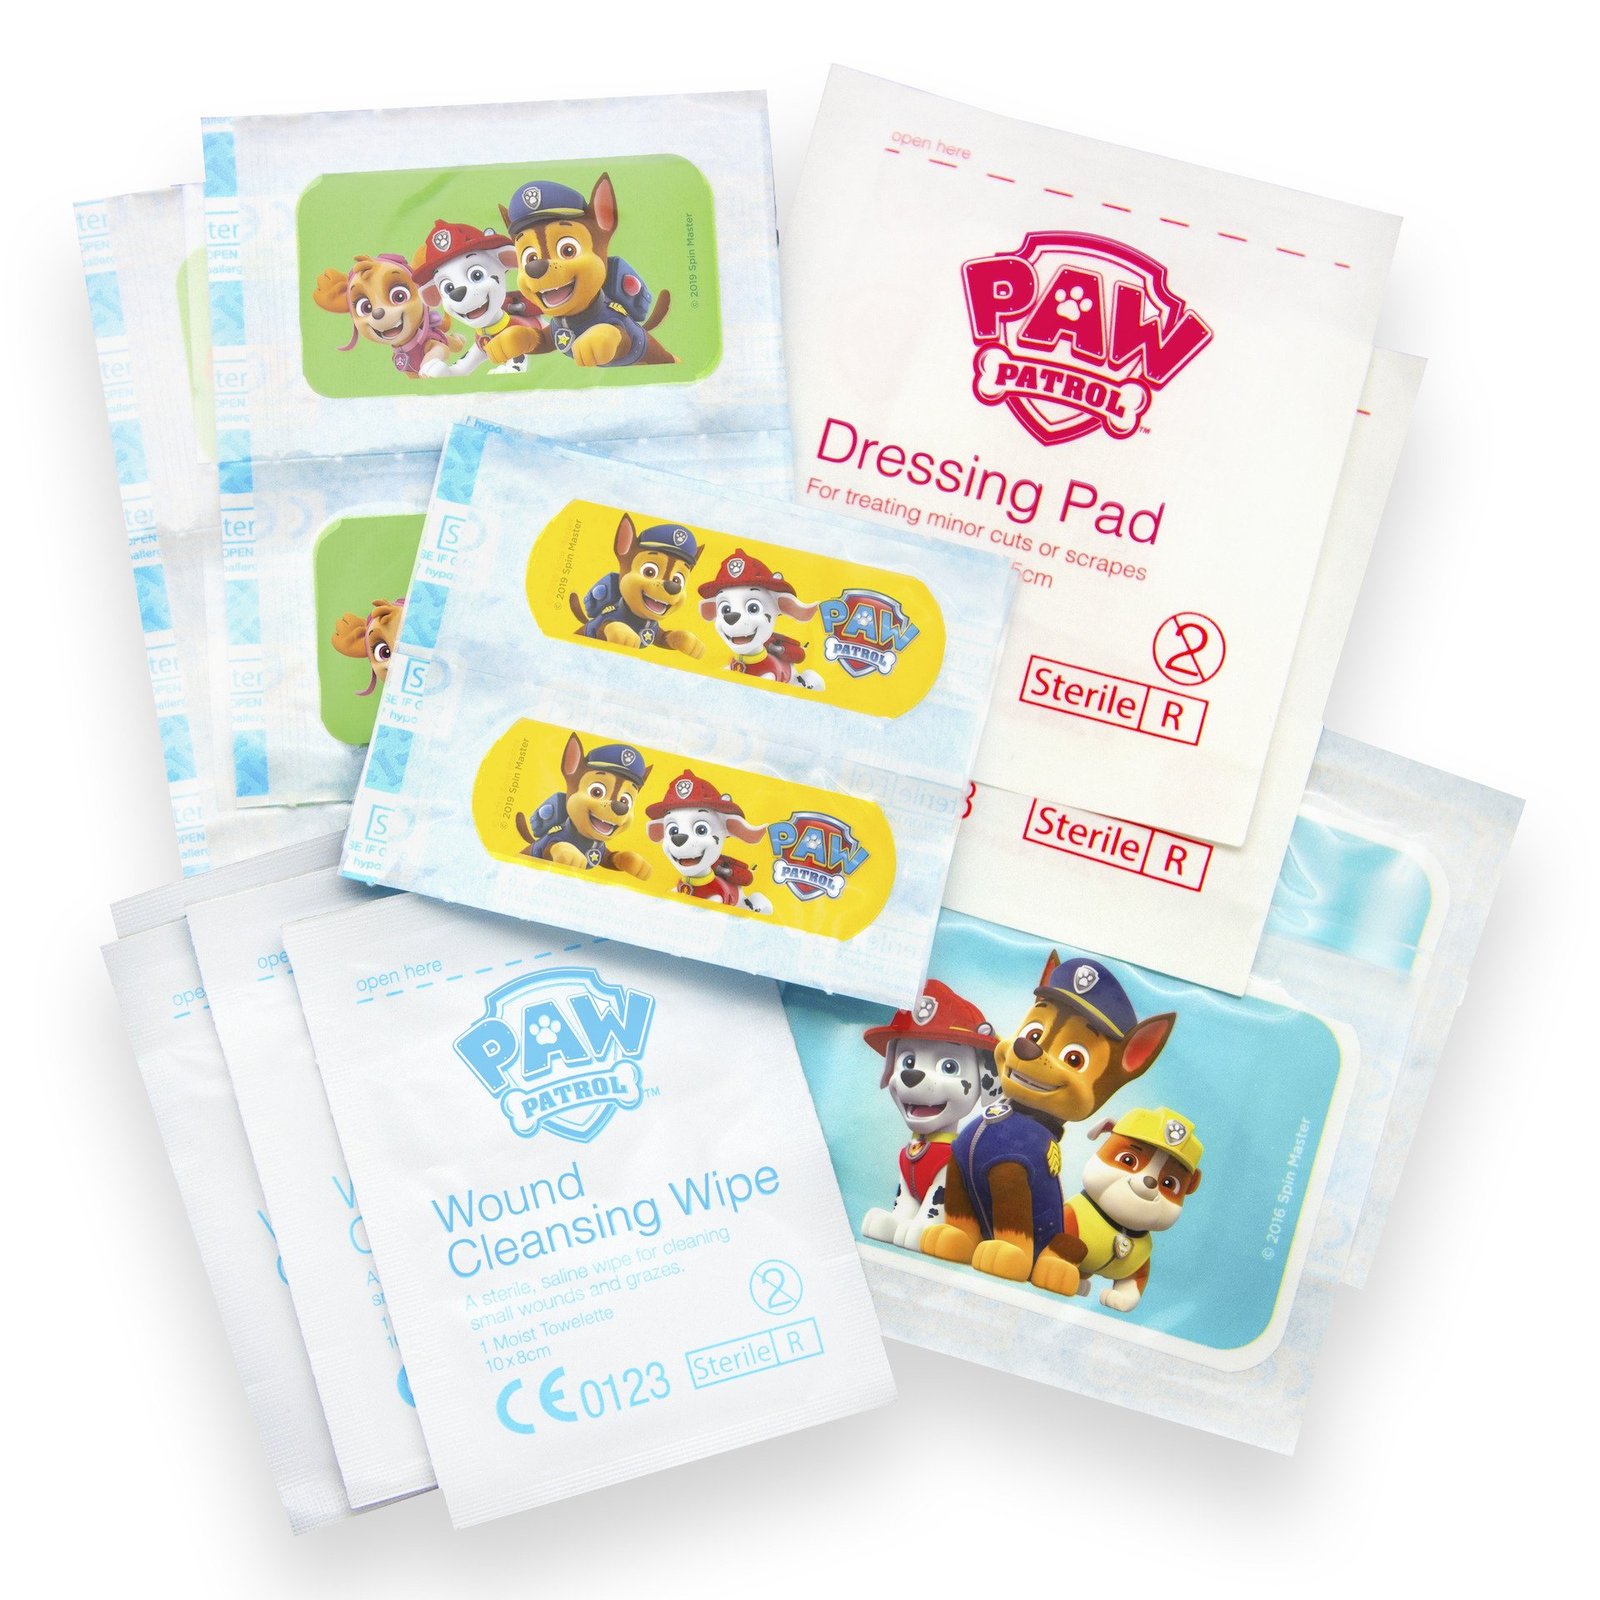 Jellyworks Paw Patrol Plasters Mini First Aid Kit